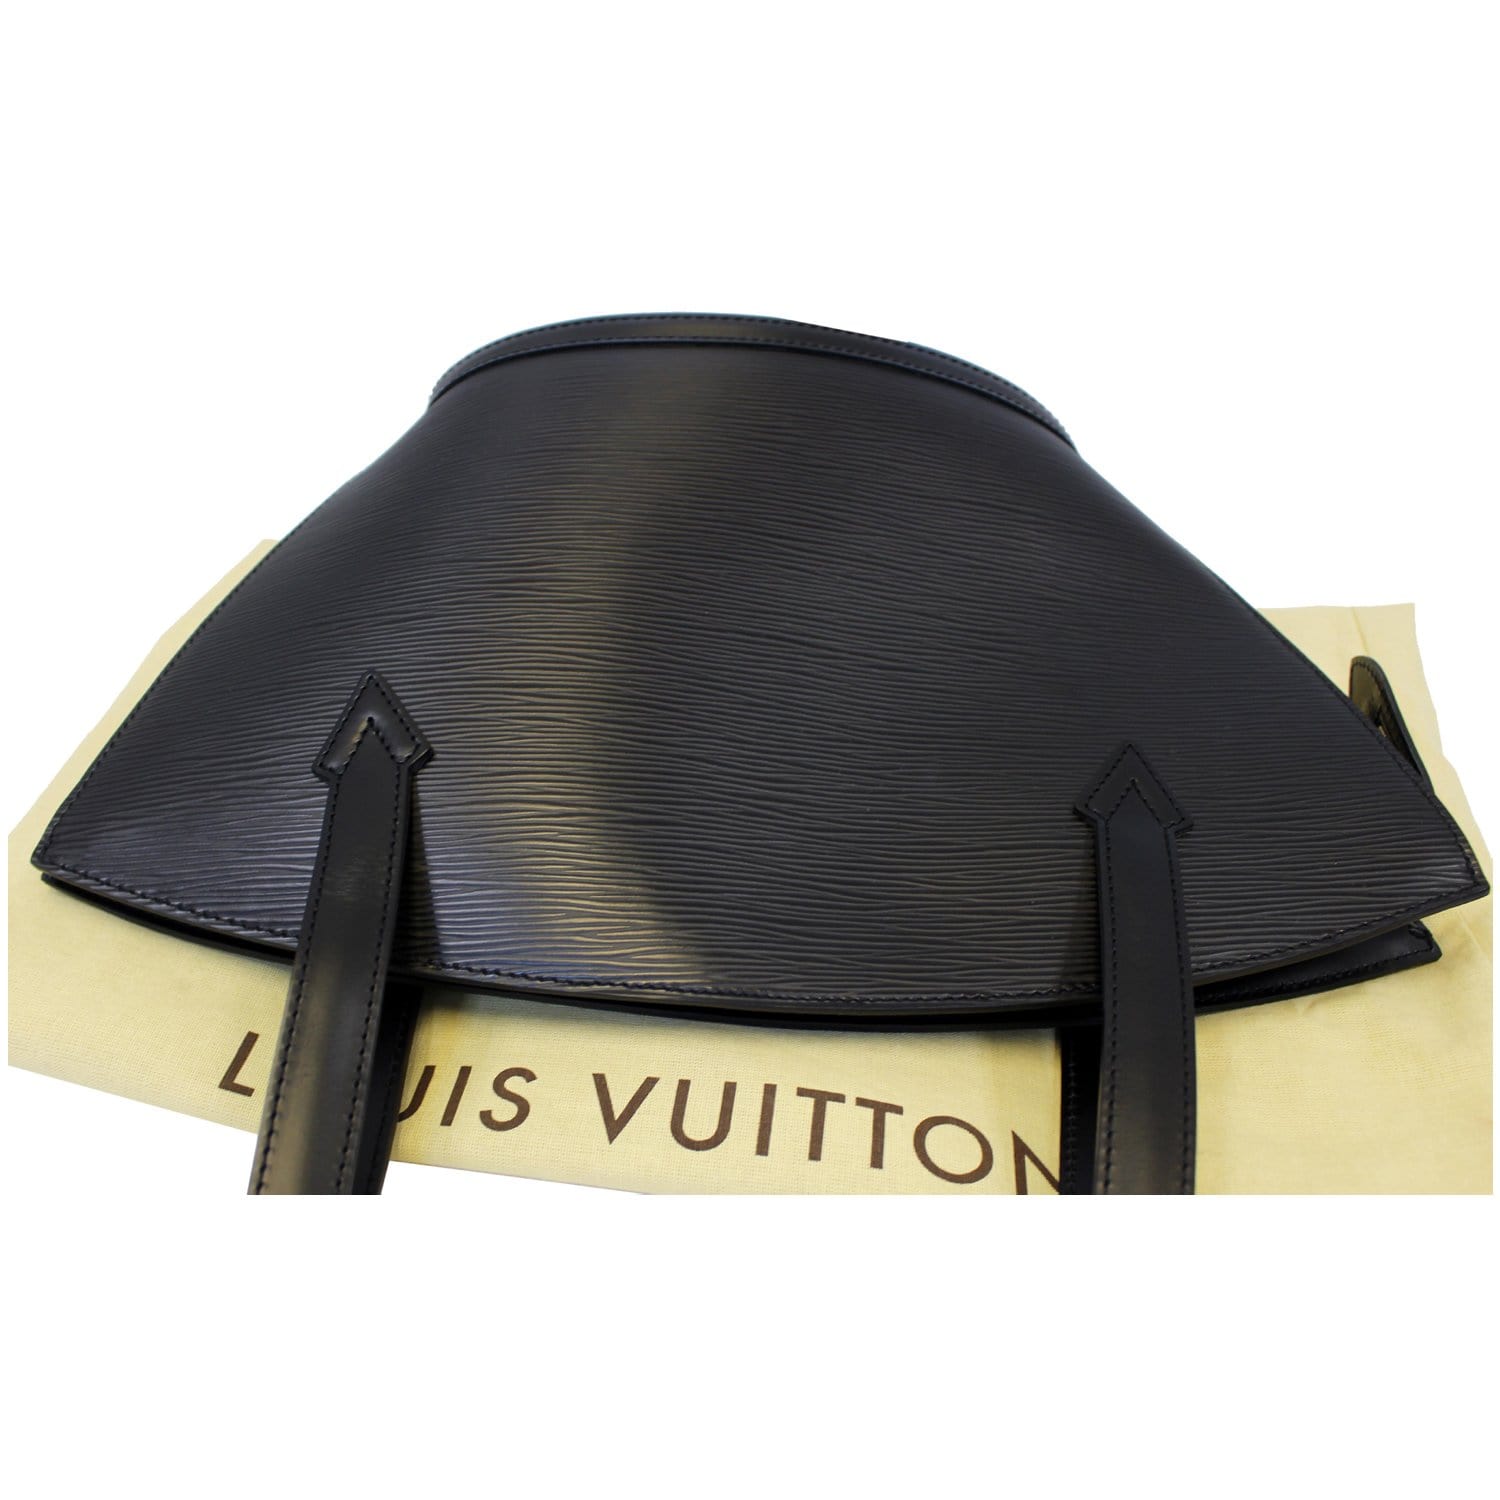 Vintage Louis Vuitton Saint Jacques Bag